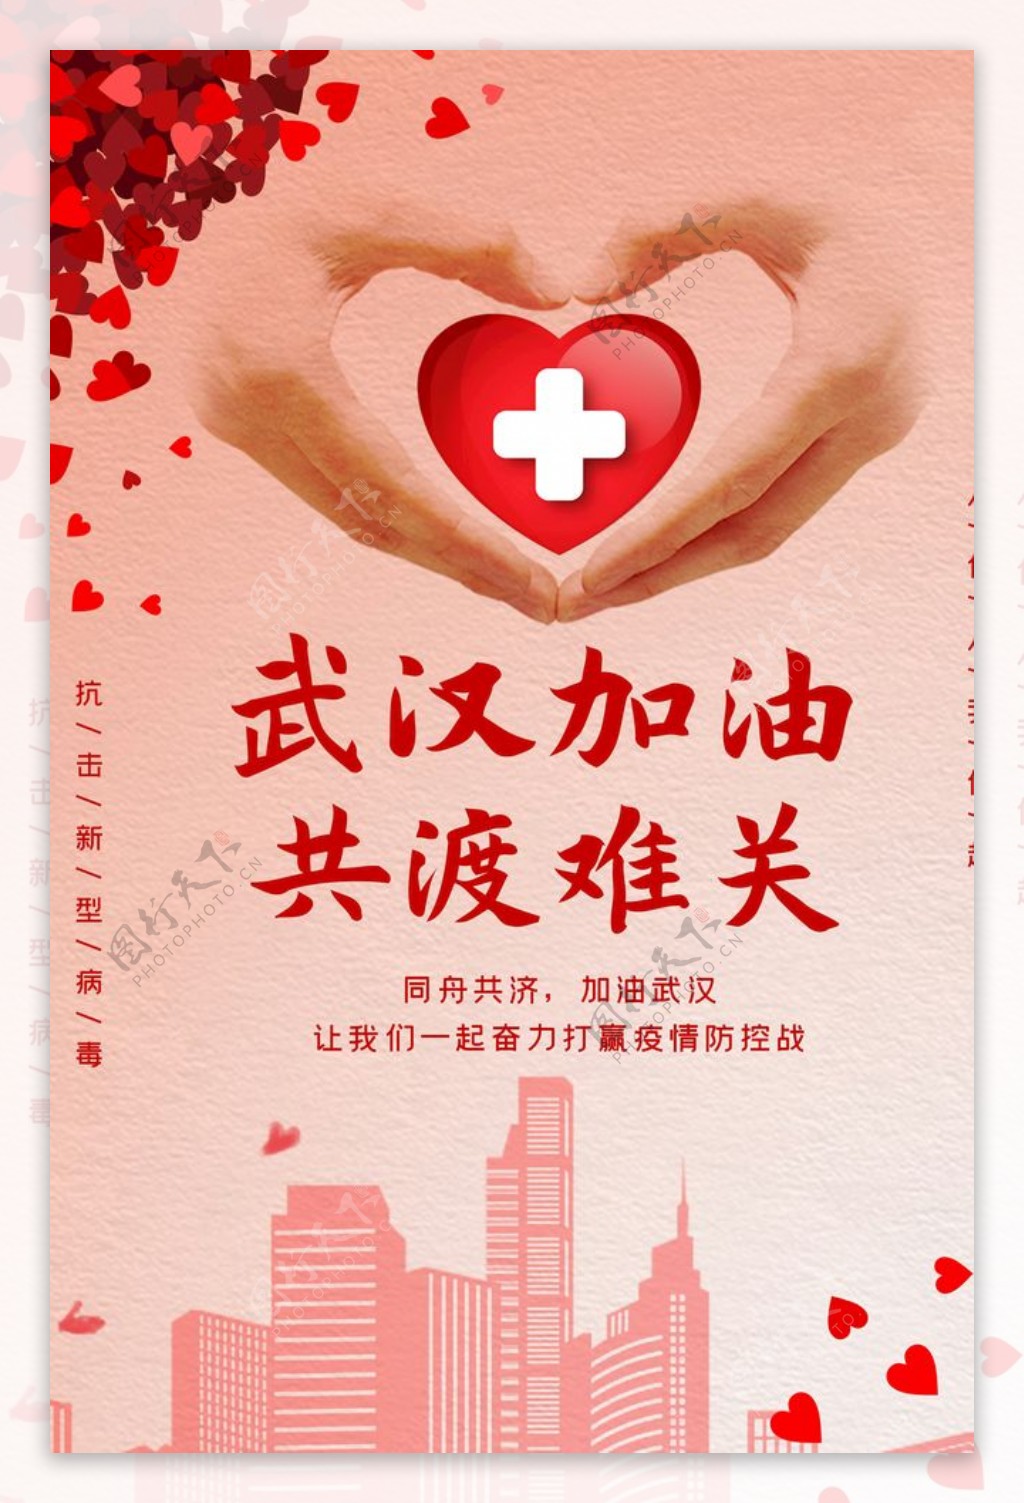 武汉加油爱心红色扁平海报